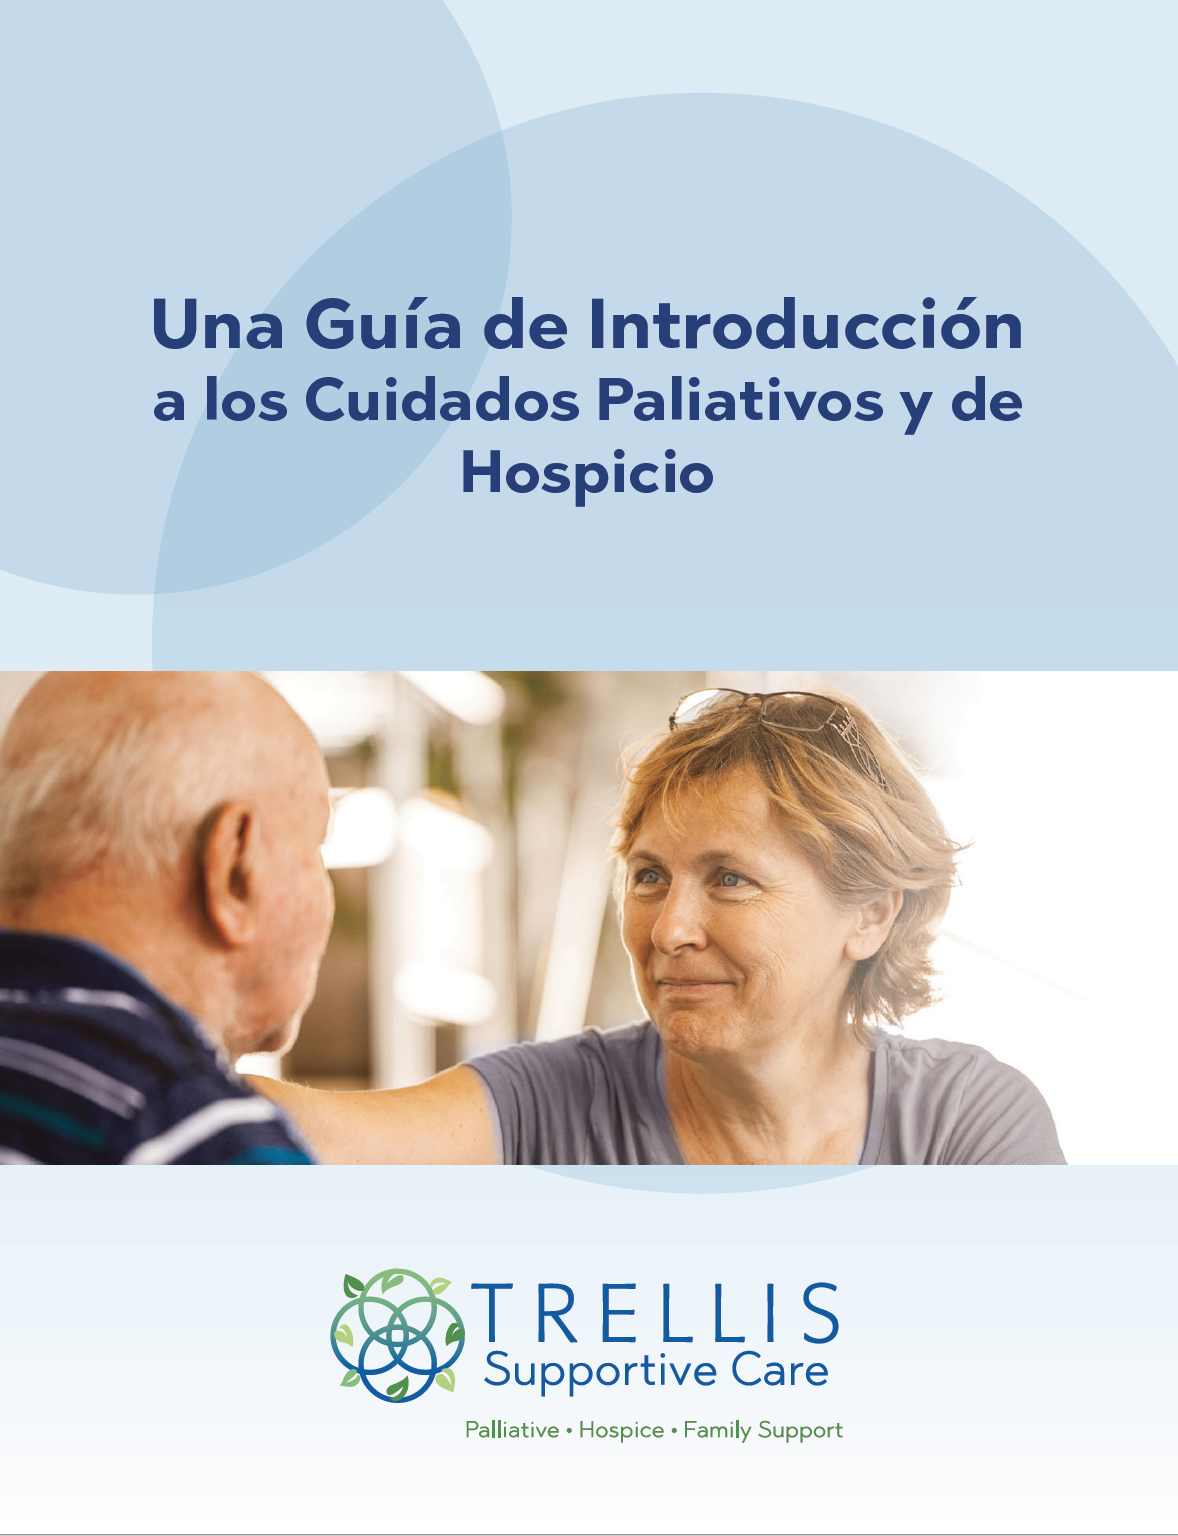 Una Guía de Introducción a los Cuidados Paliativos y de Hospicio